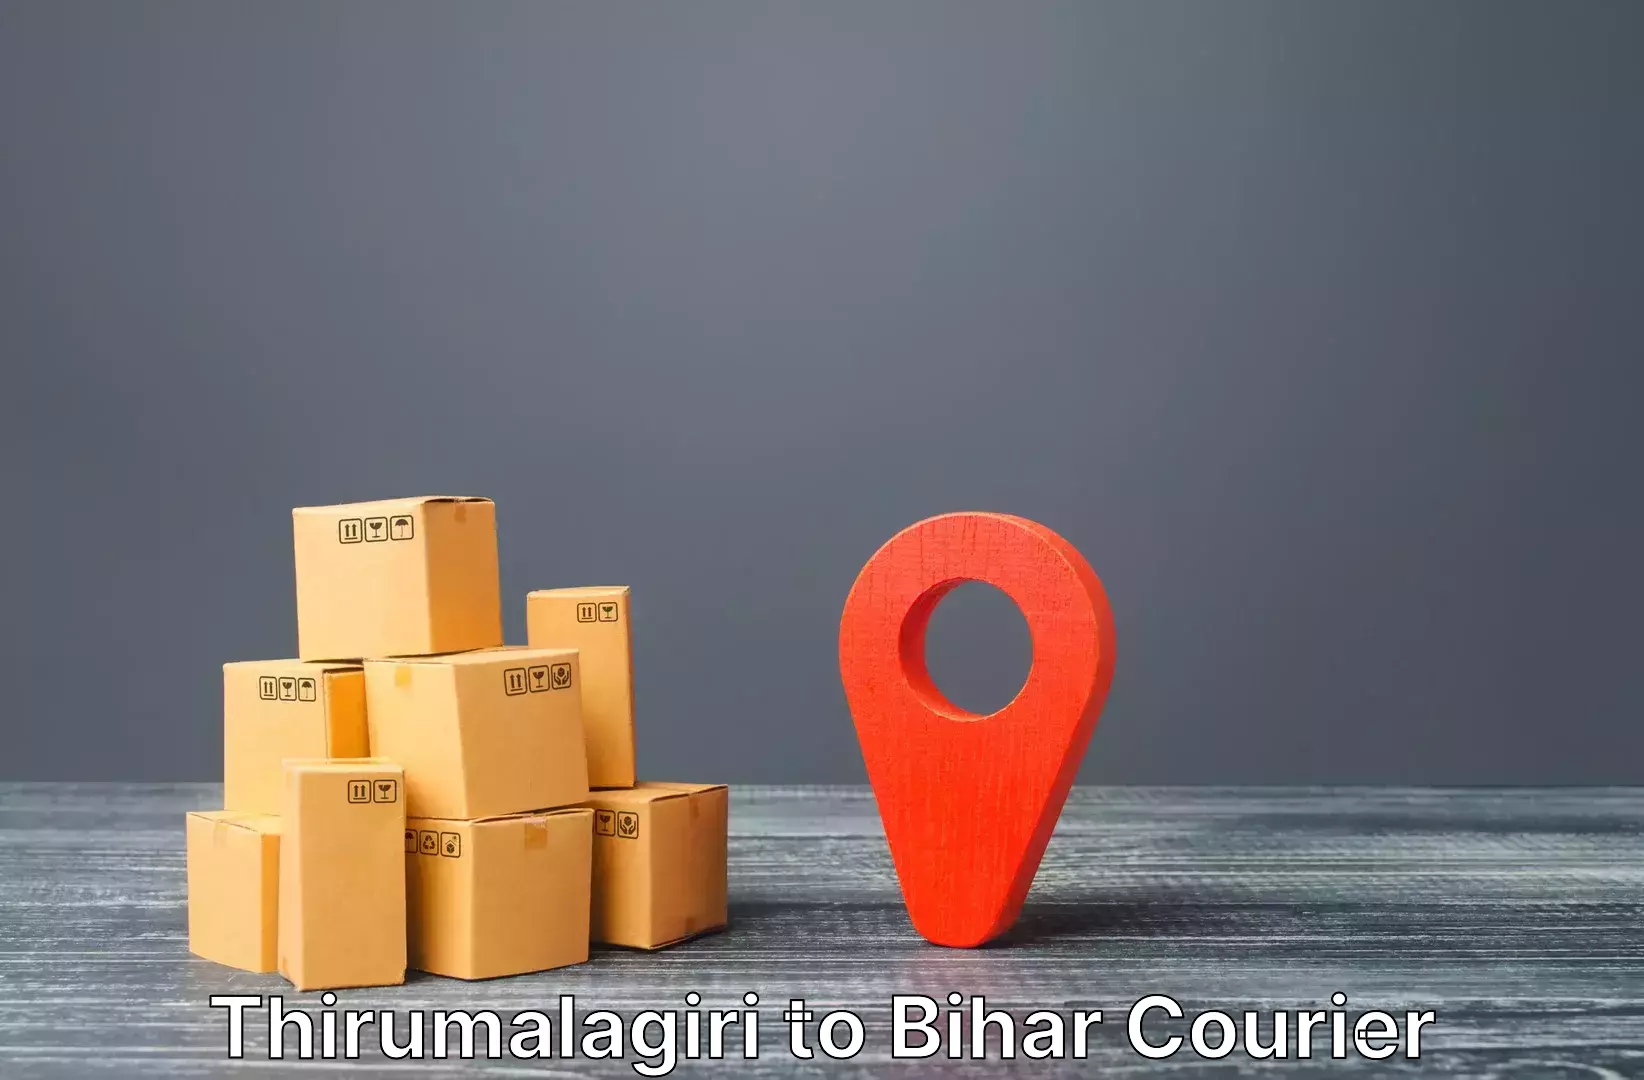 Premium luggage courier Thirumalagiri to Jhajha